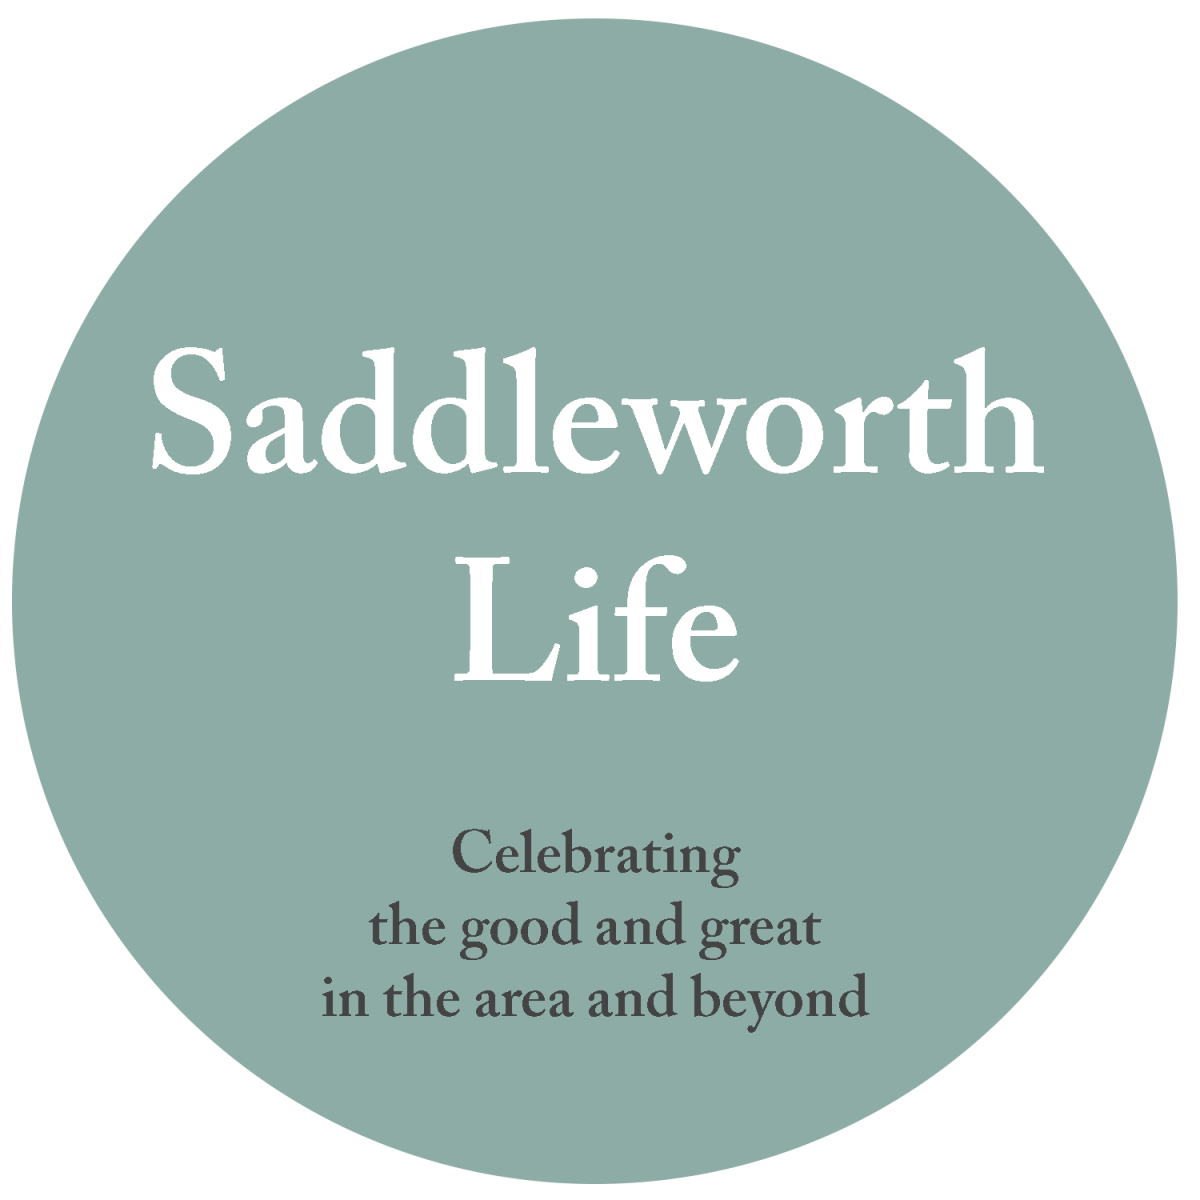 Saddleworth Life